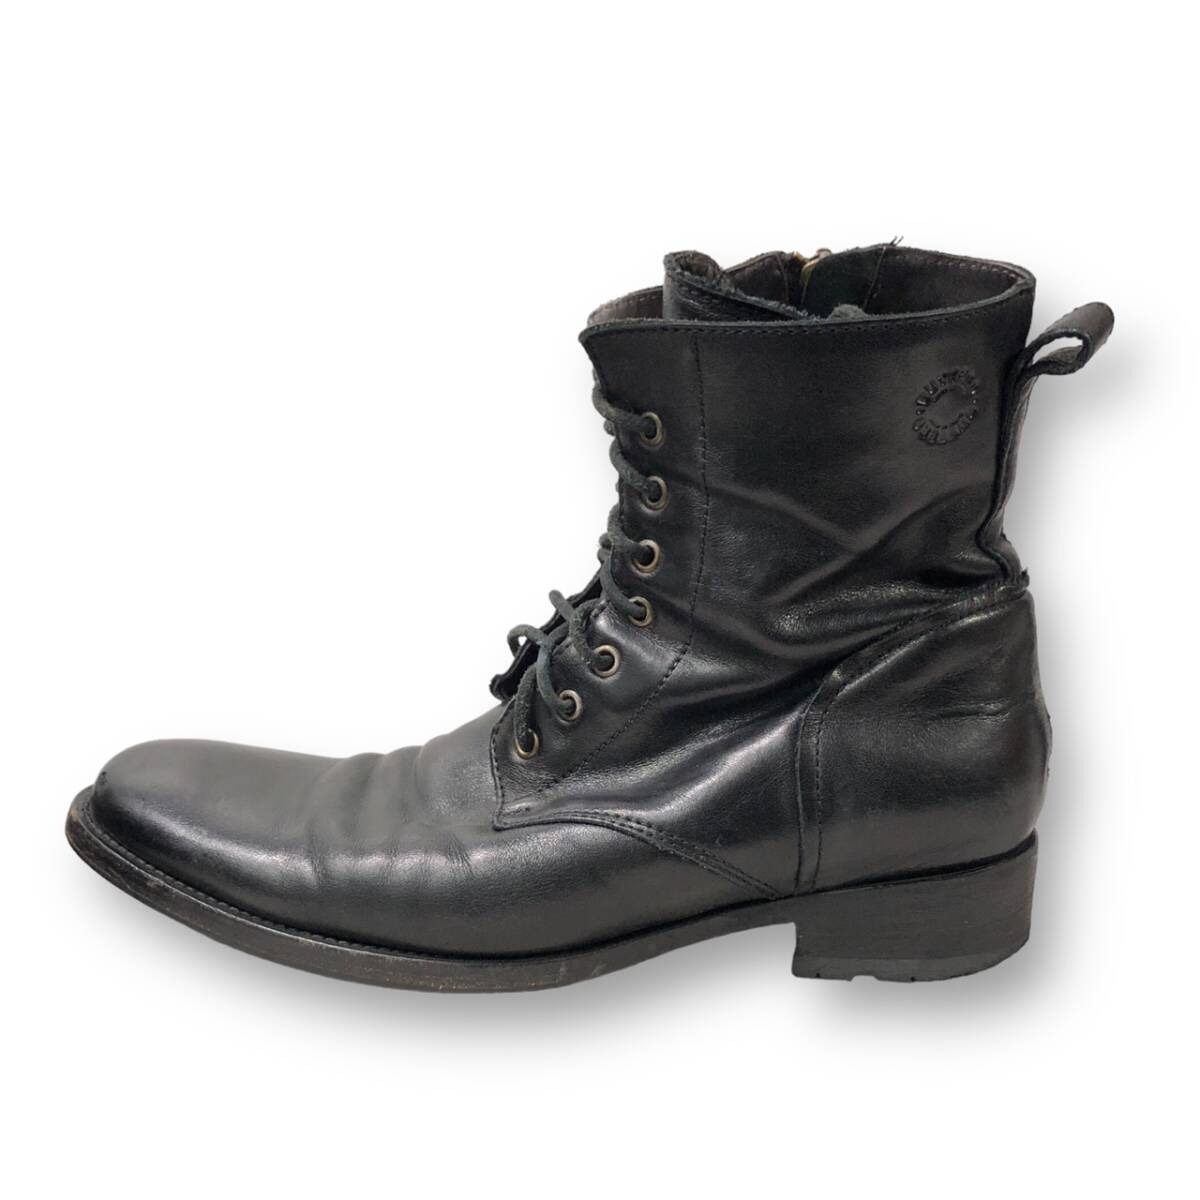 BUTTERO leather Boots レザーサイドジップブーツ サイズ44 ブッテロ 店舗受取可_画像4